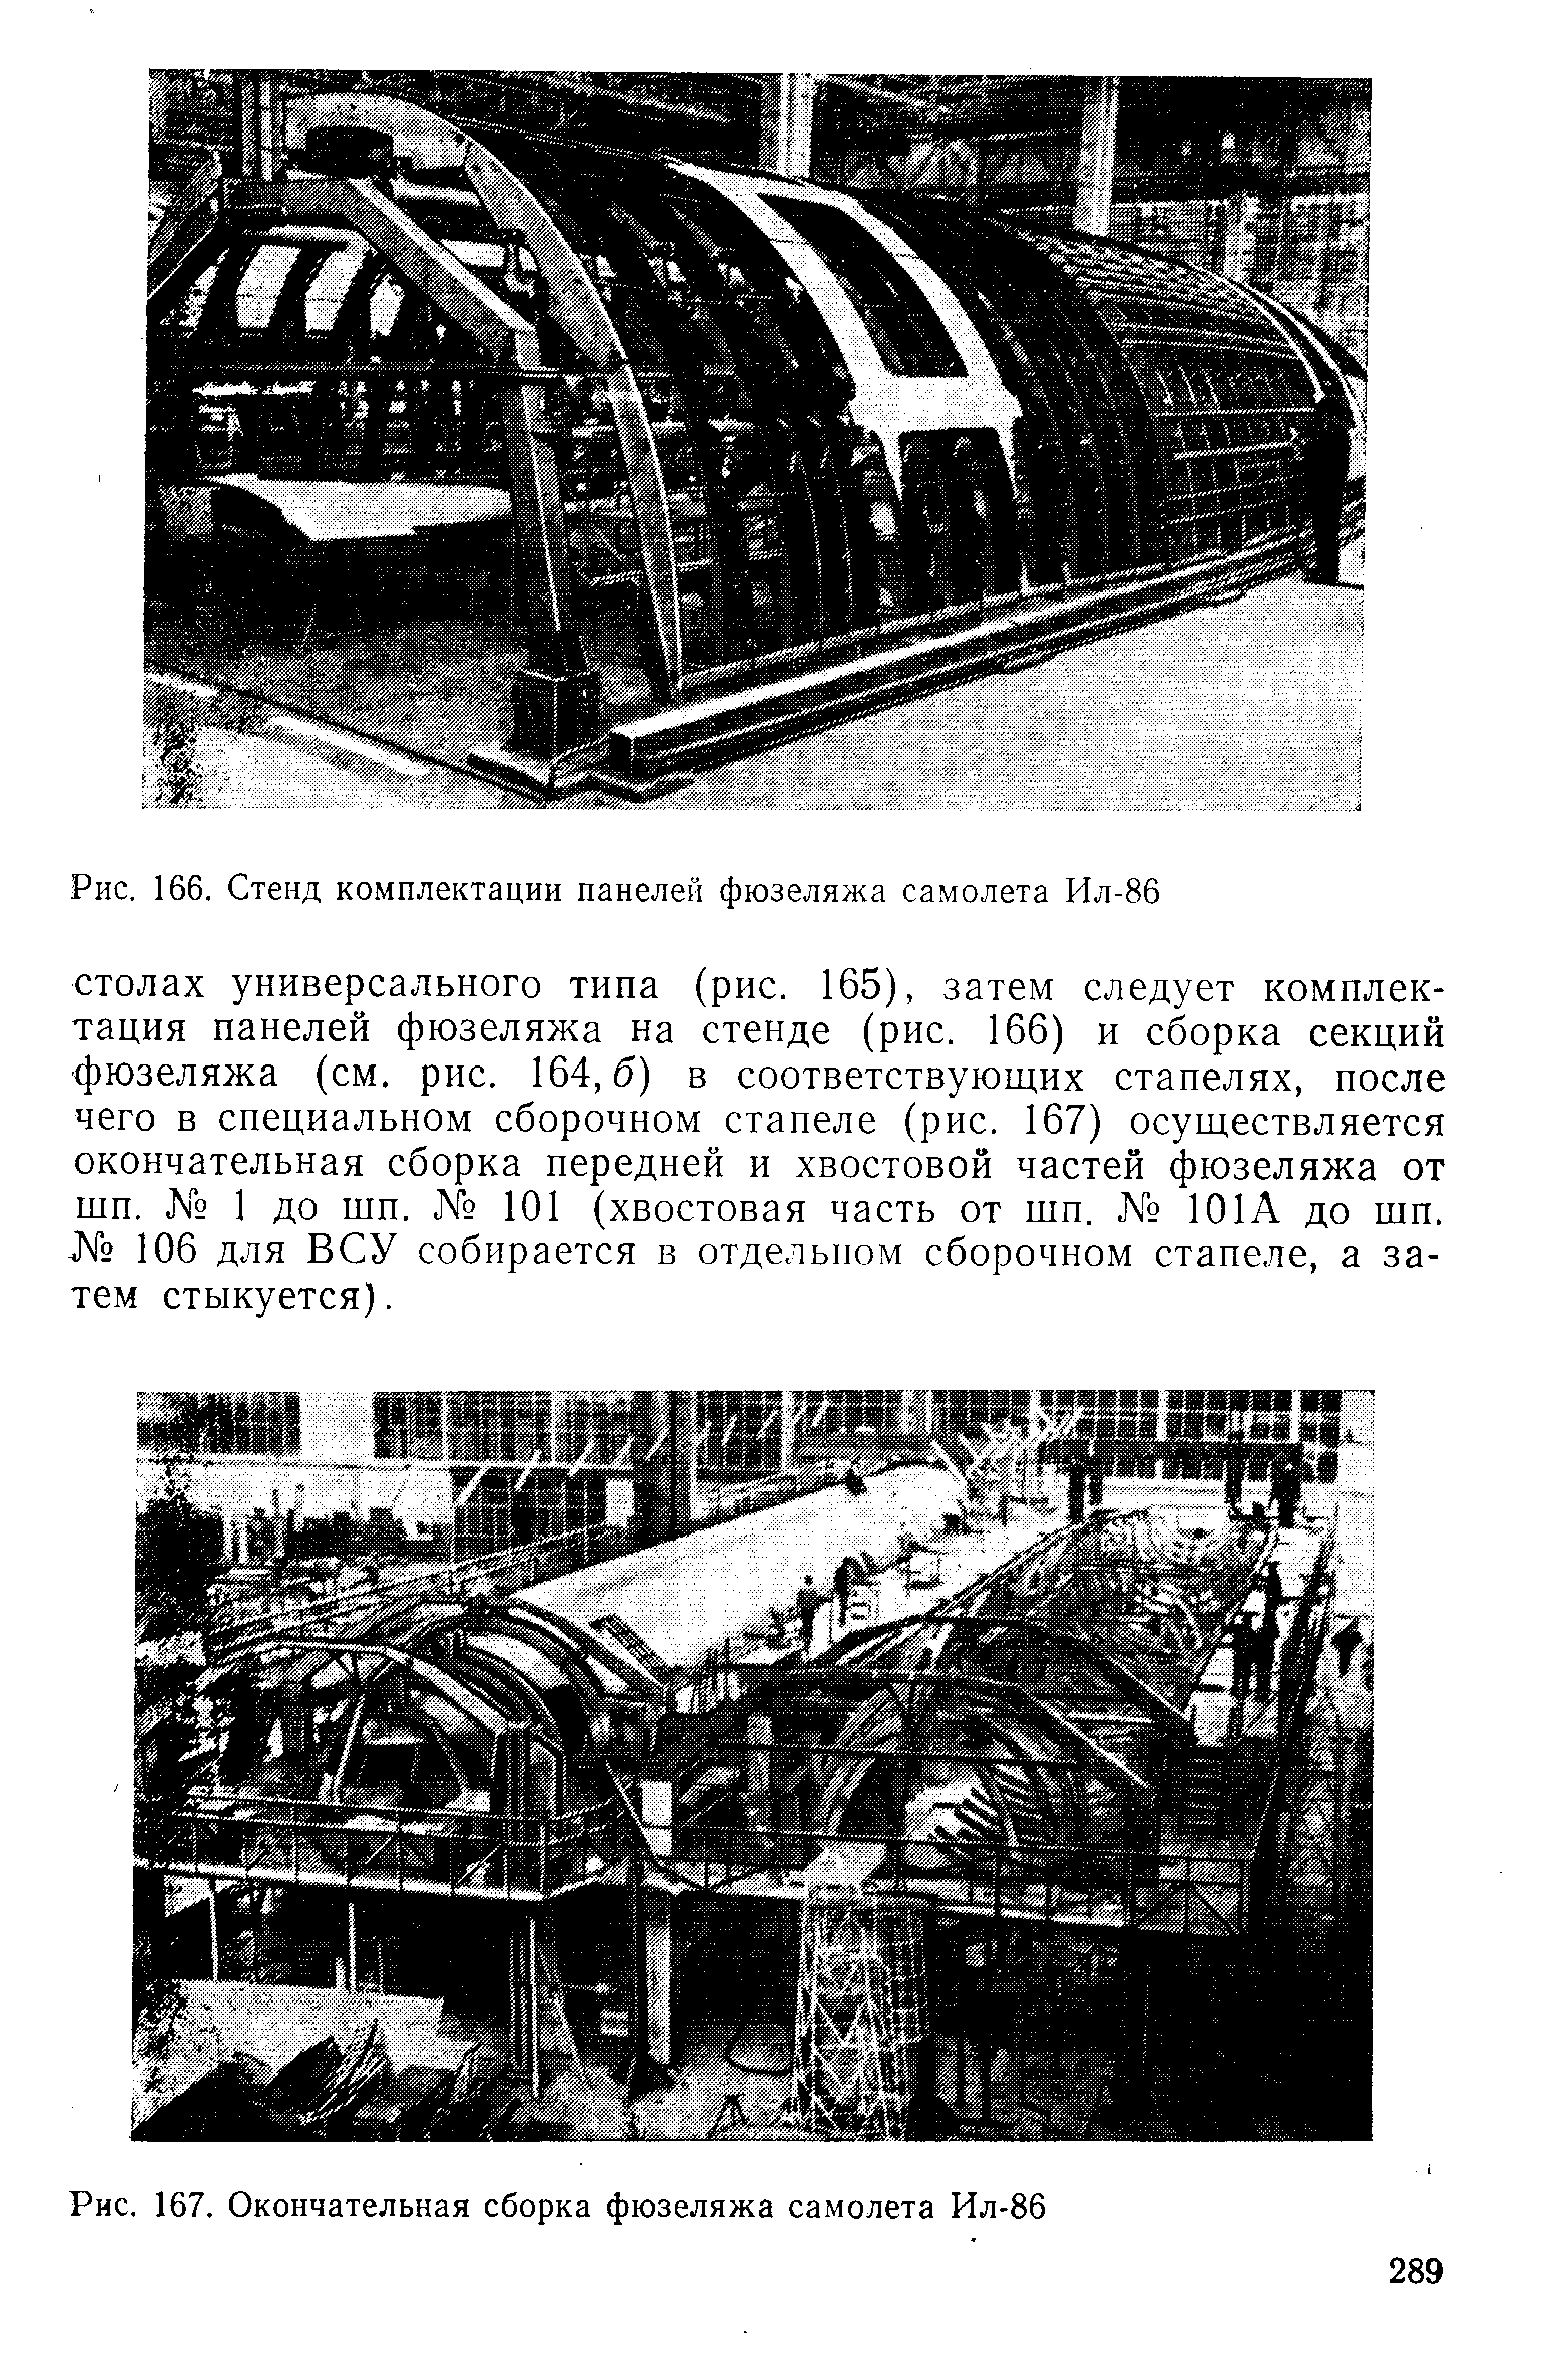 Рис. 167. Окончательная сборка фюзеляжа самолета Ил-86
